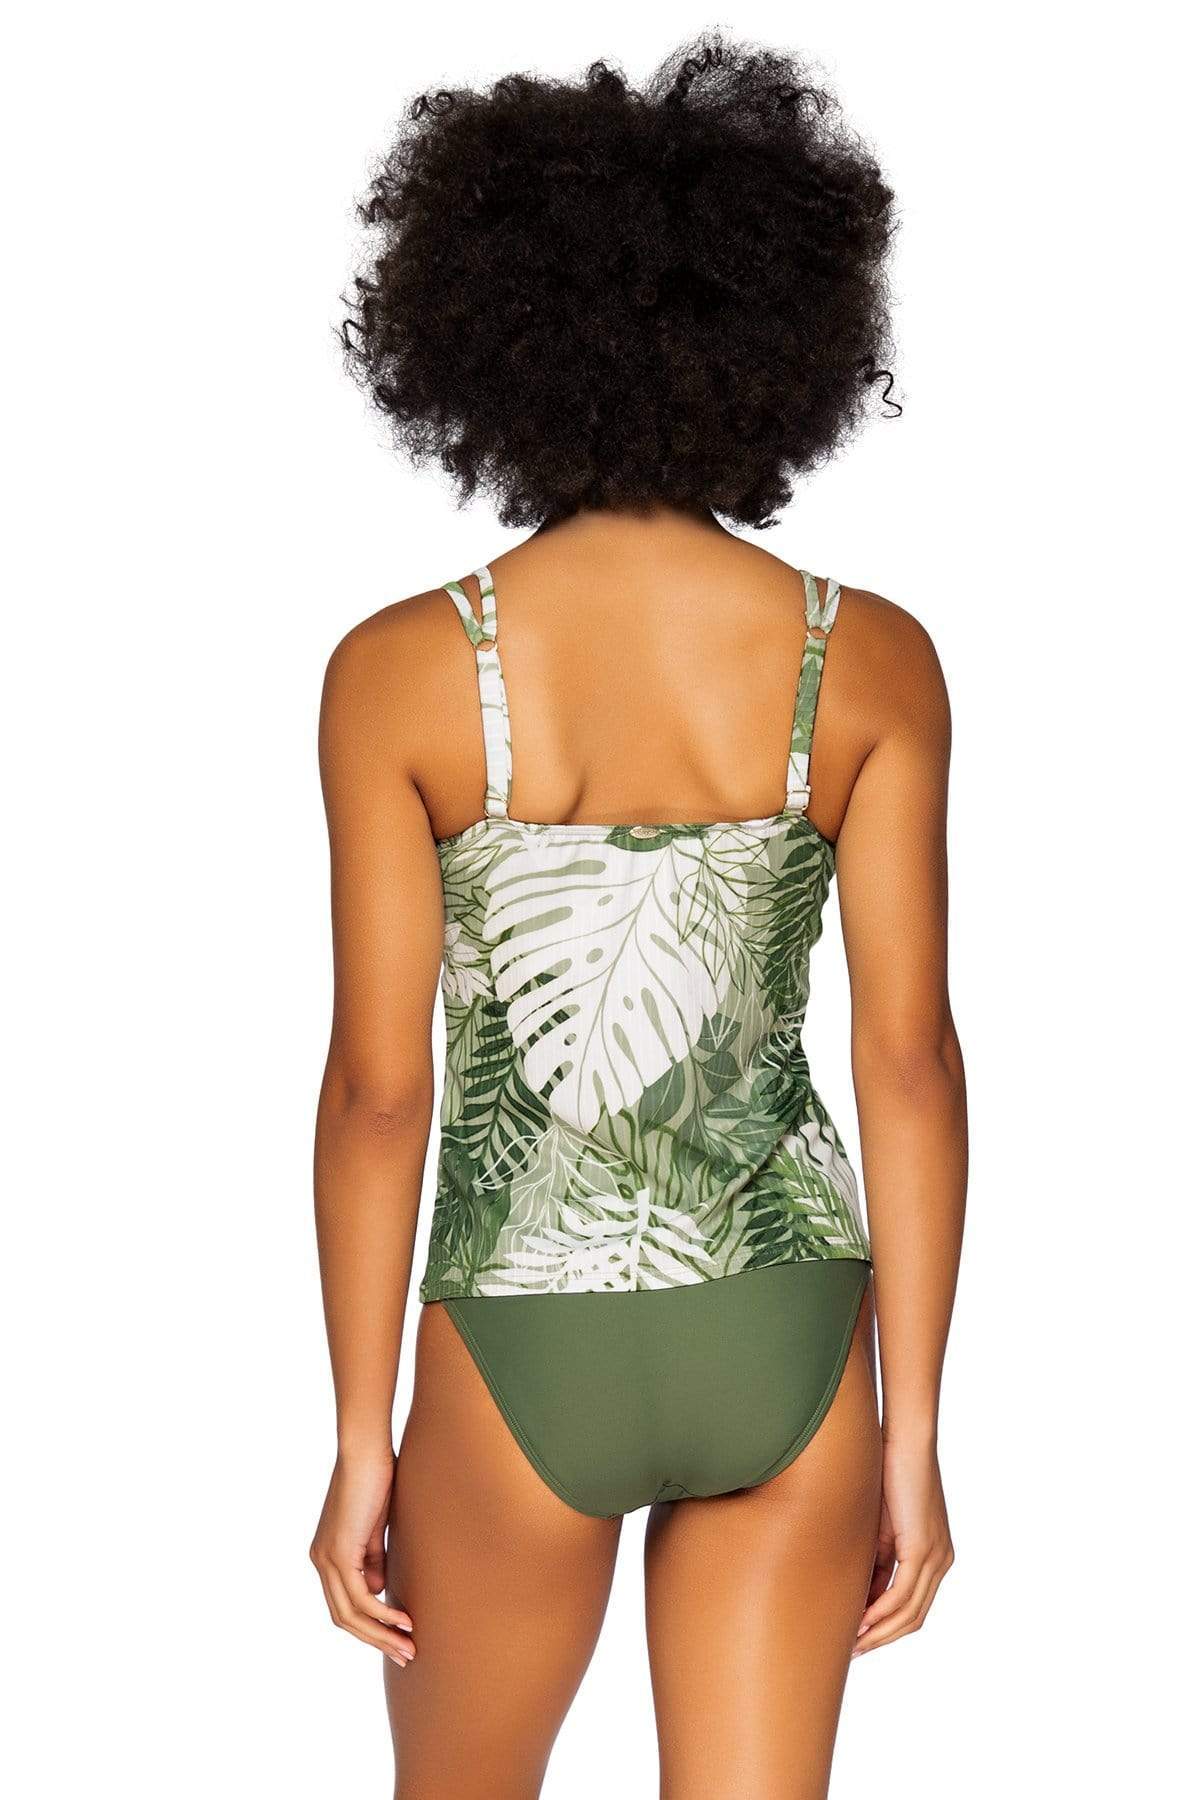 Bestswimwear -  Sunsets Palm Grove Taylor Tankini